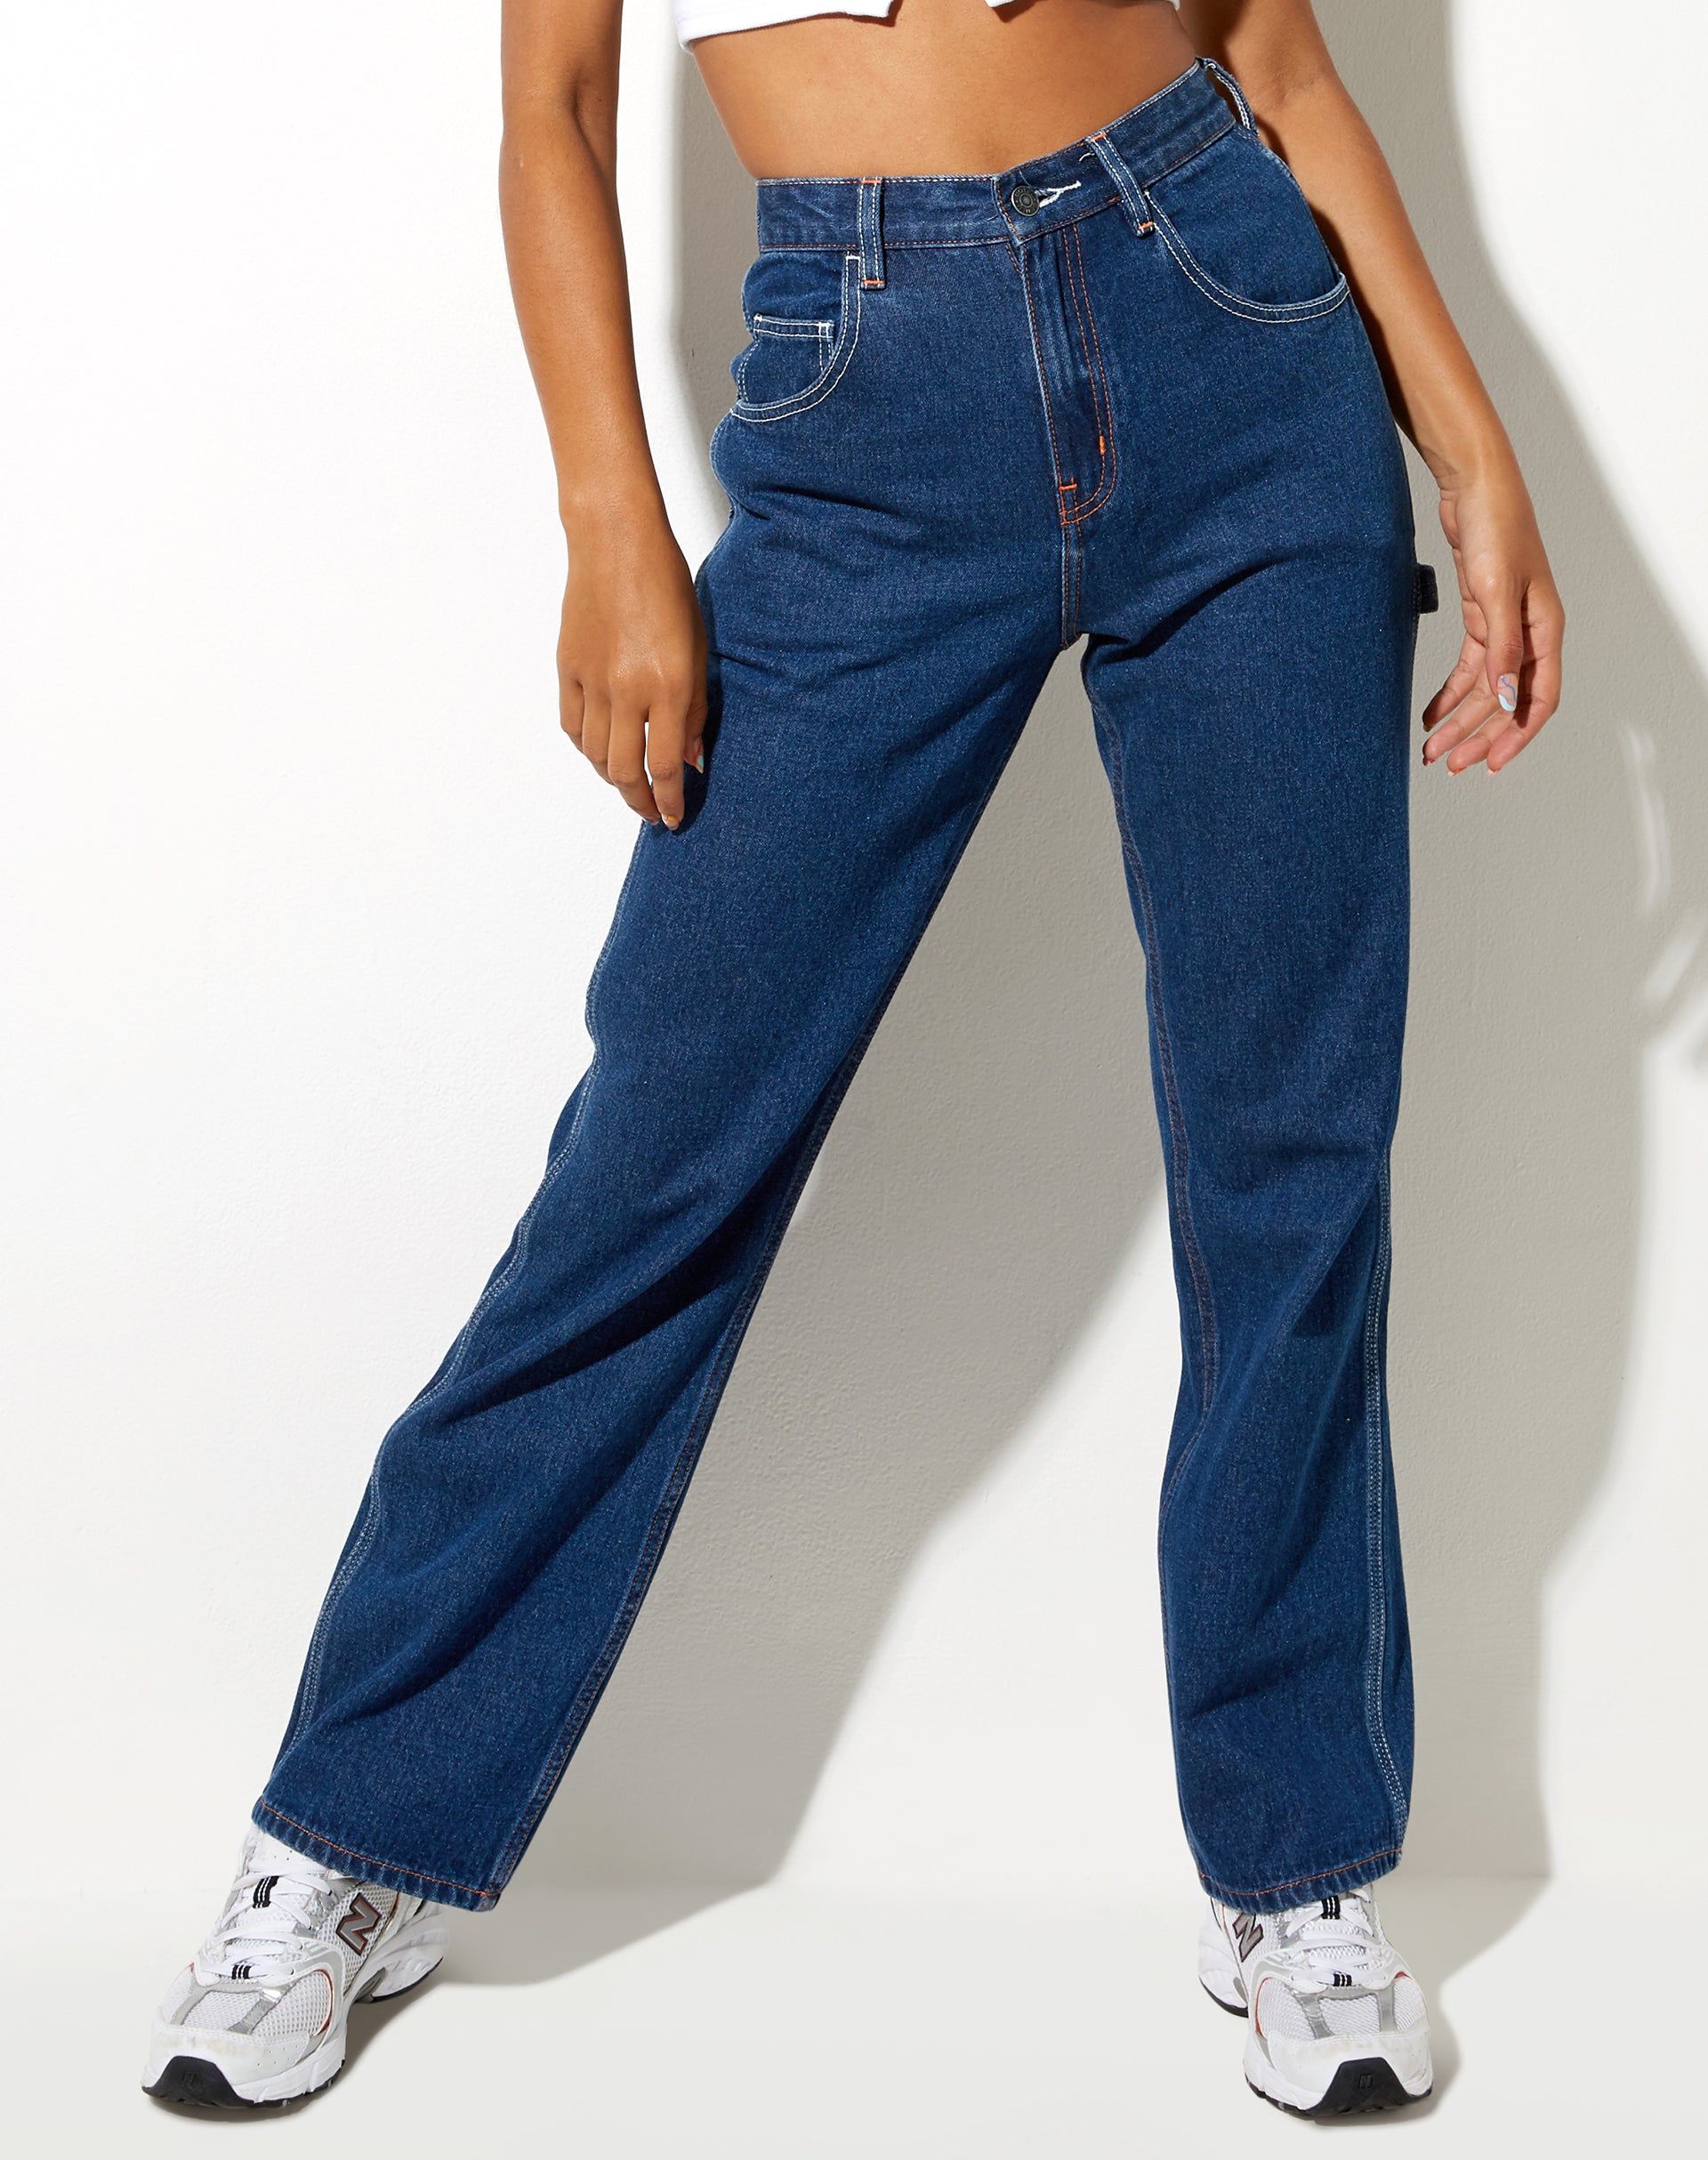 Image of Carpenter Jeans in Indigo Blue